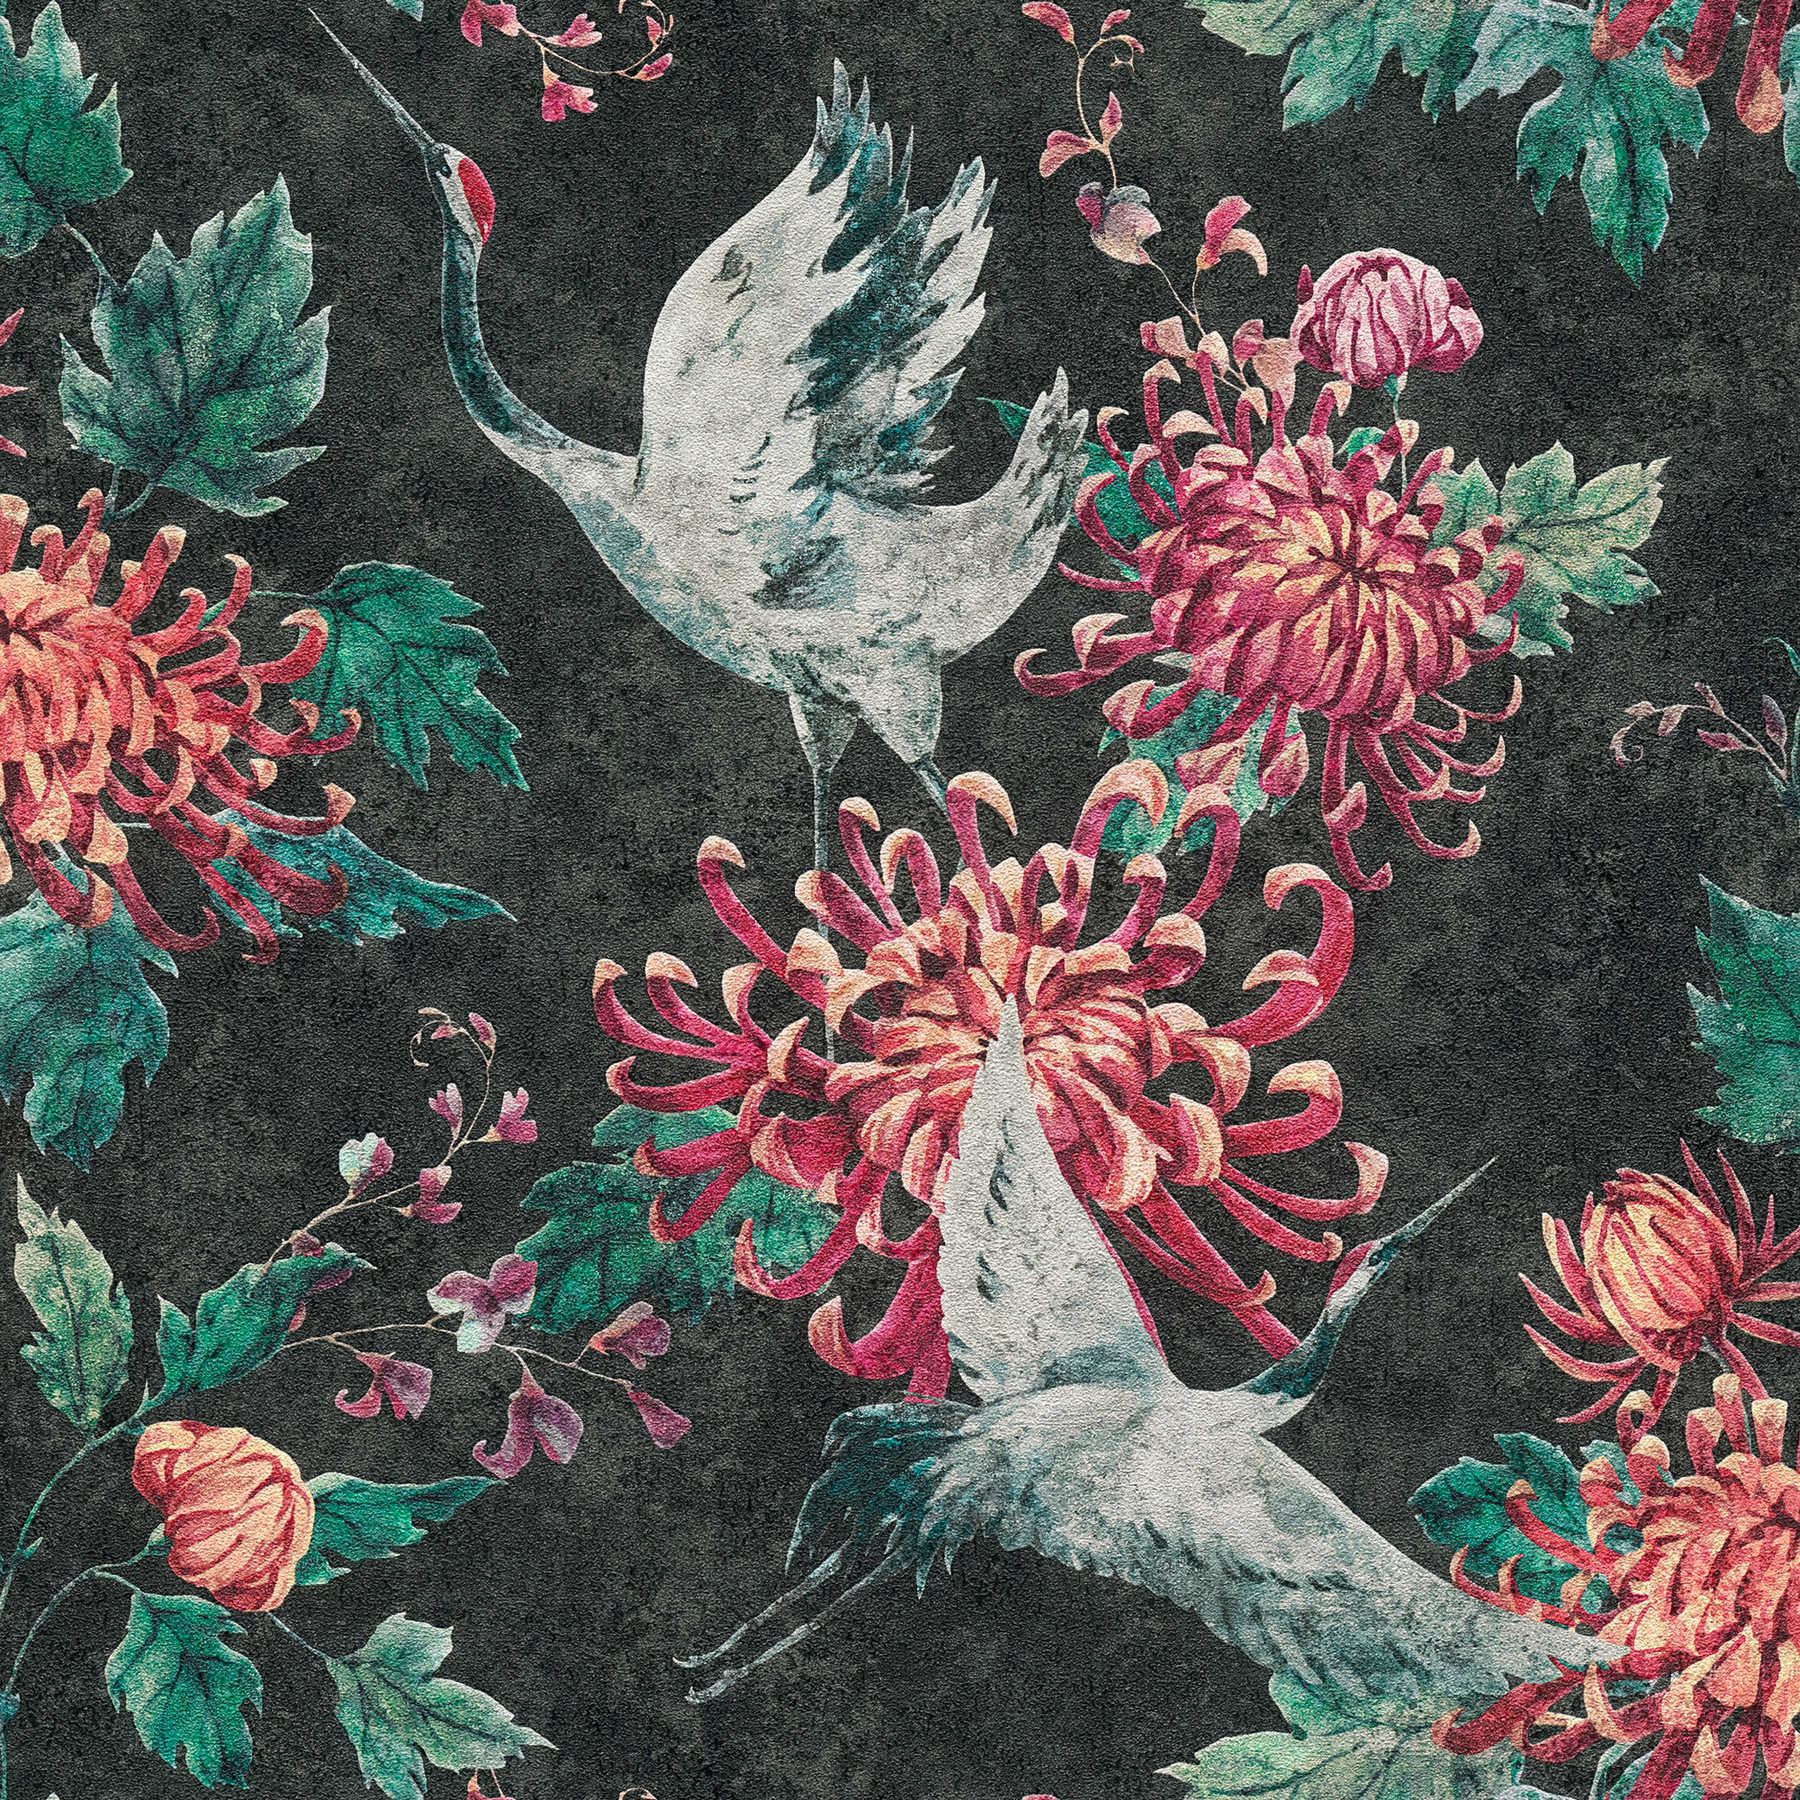 Patroonbehang met Aziatisch kraanvogel- en bloemmotief - zwart, rood, groen
